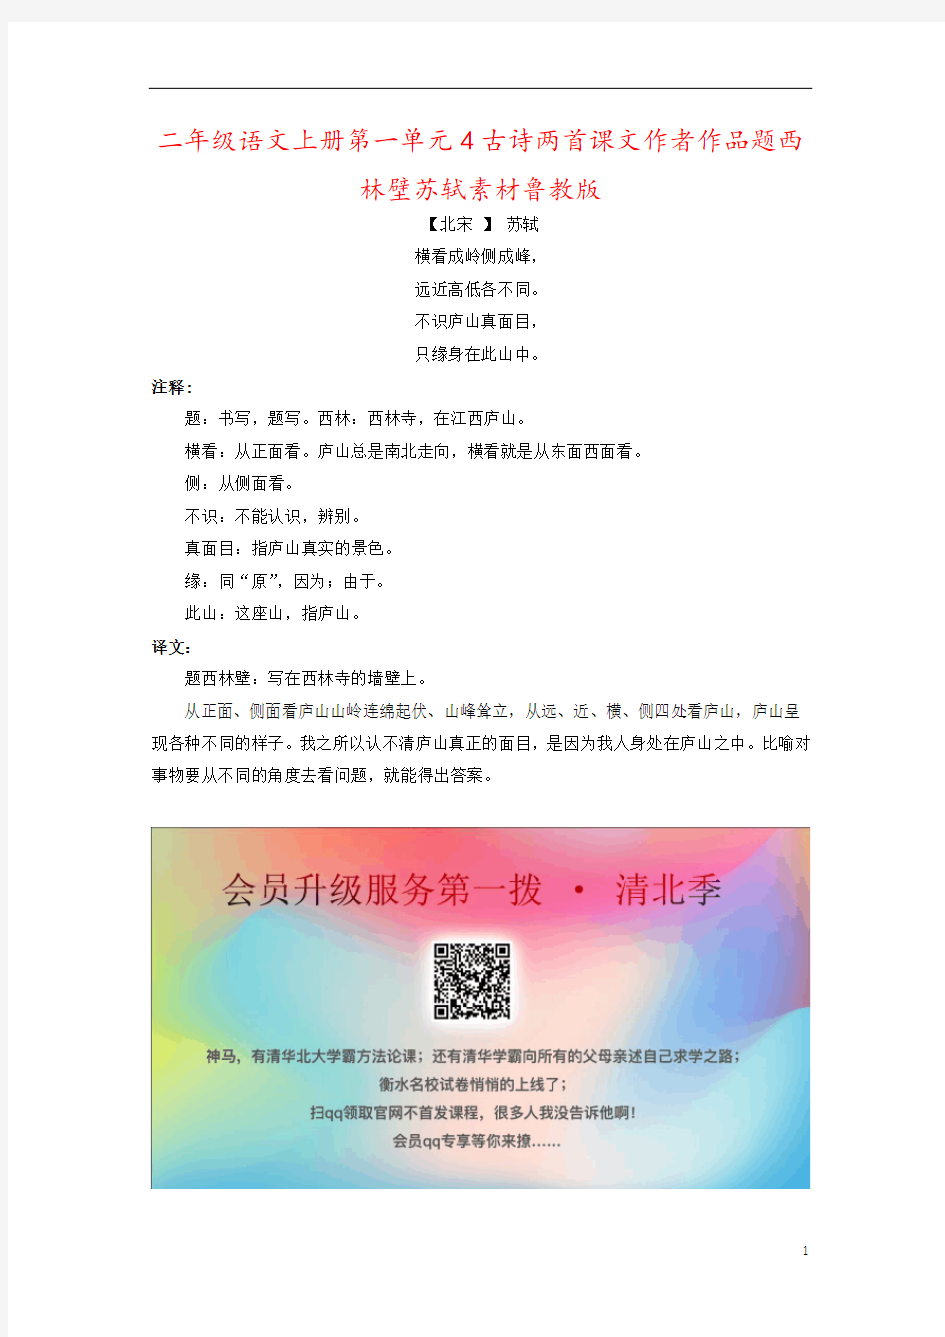 二年级语文上册第一单元4古诗两首课文作者作品题西林壁苏轼素材鲁教版